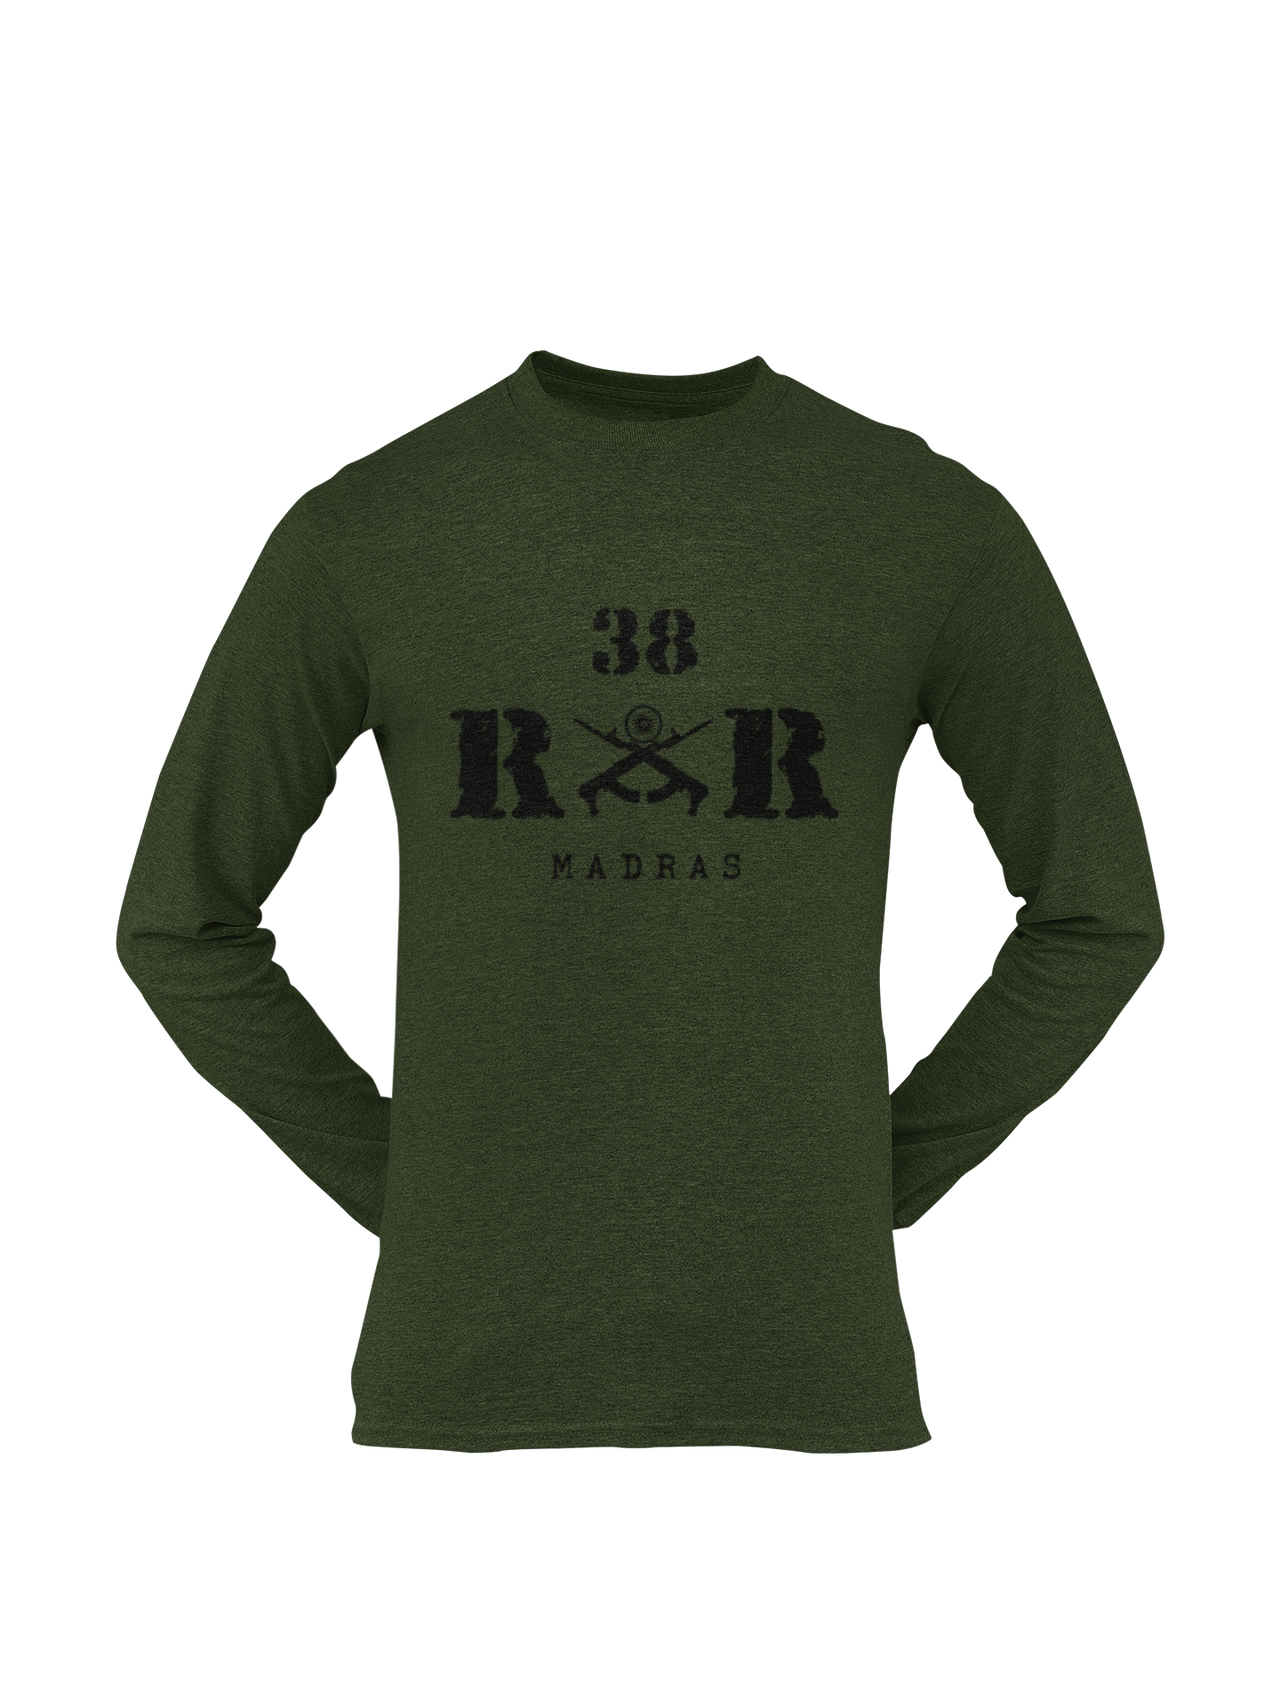 Rashtriya Rifles T-shirt - 38 RR Madras (Men)